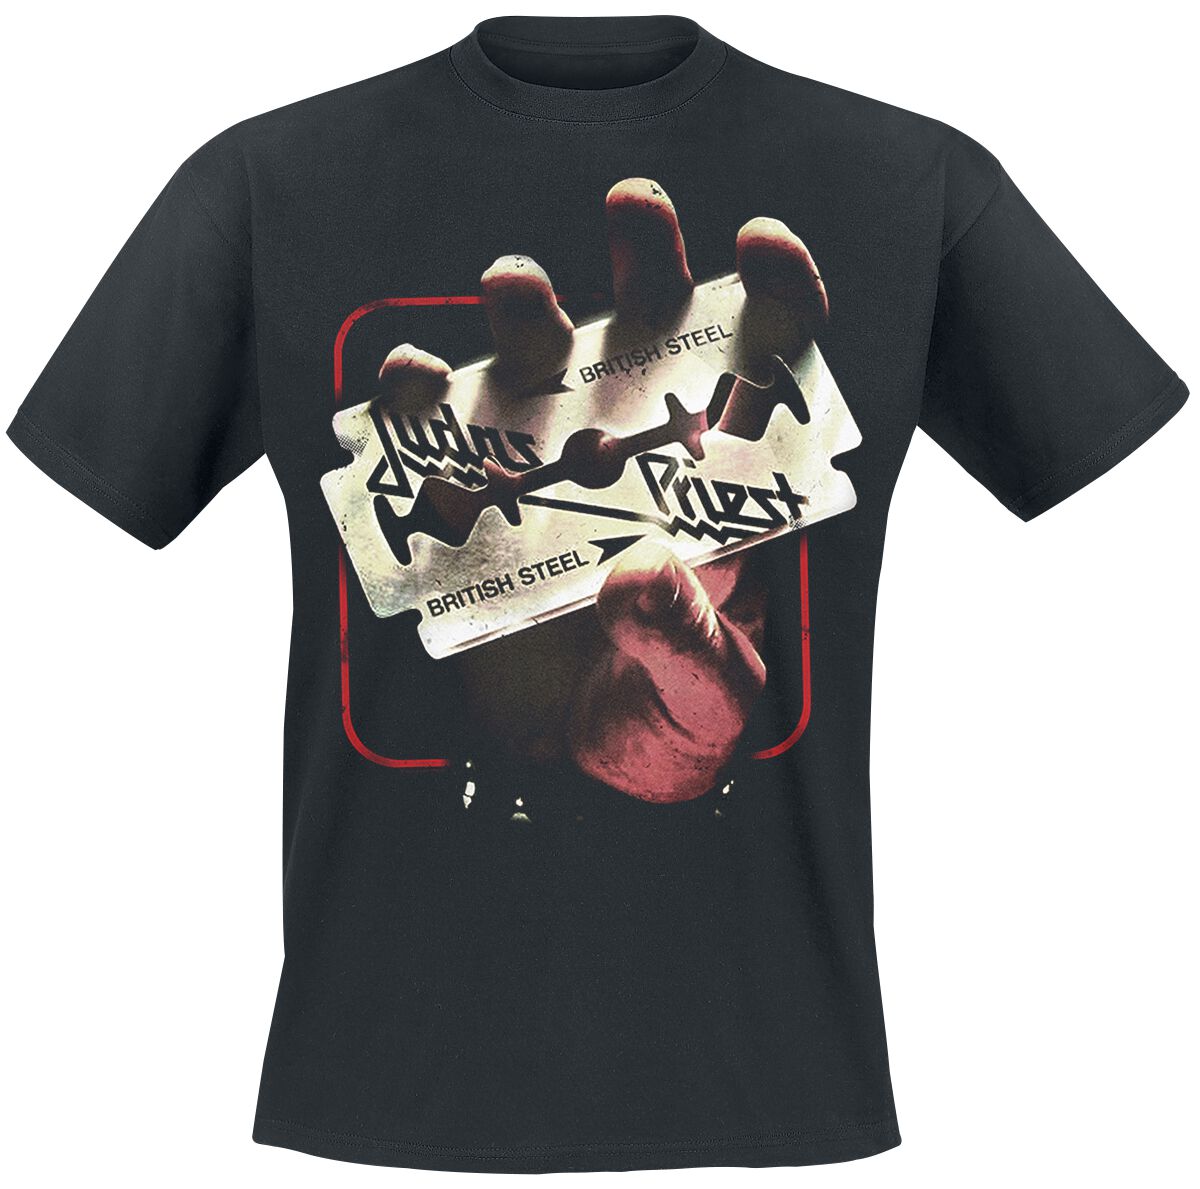 Judas Priest T-Shirt - British Steel 50HMY Tour - M bis XXL - für Männer - Größe M - schwarz  - EMP exklusives Merchandise! von Judas Priest